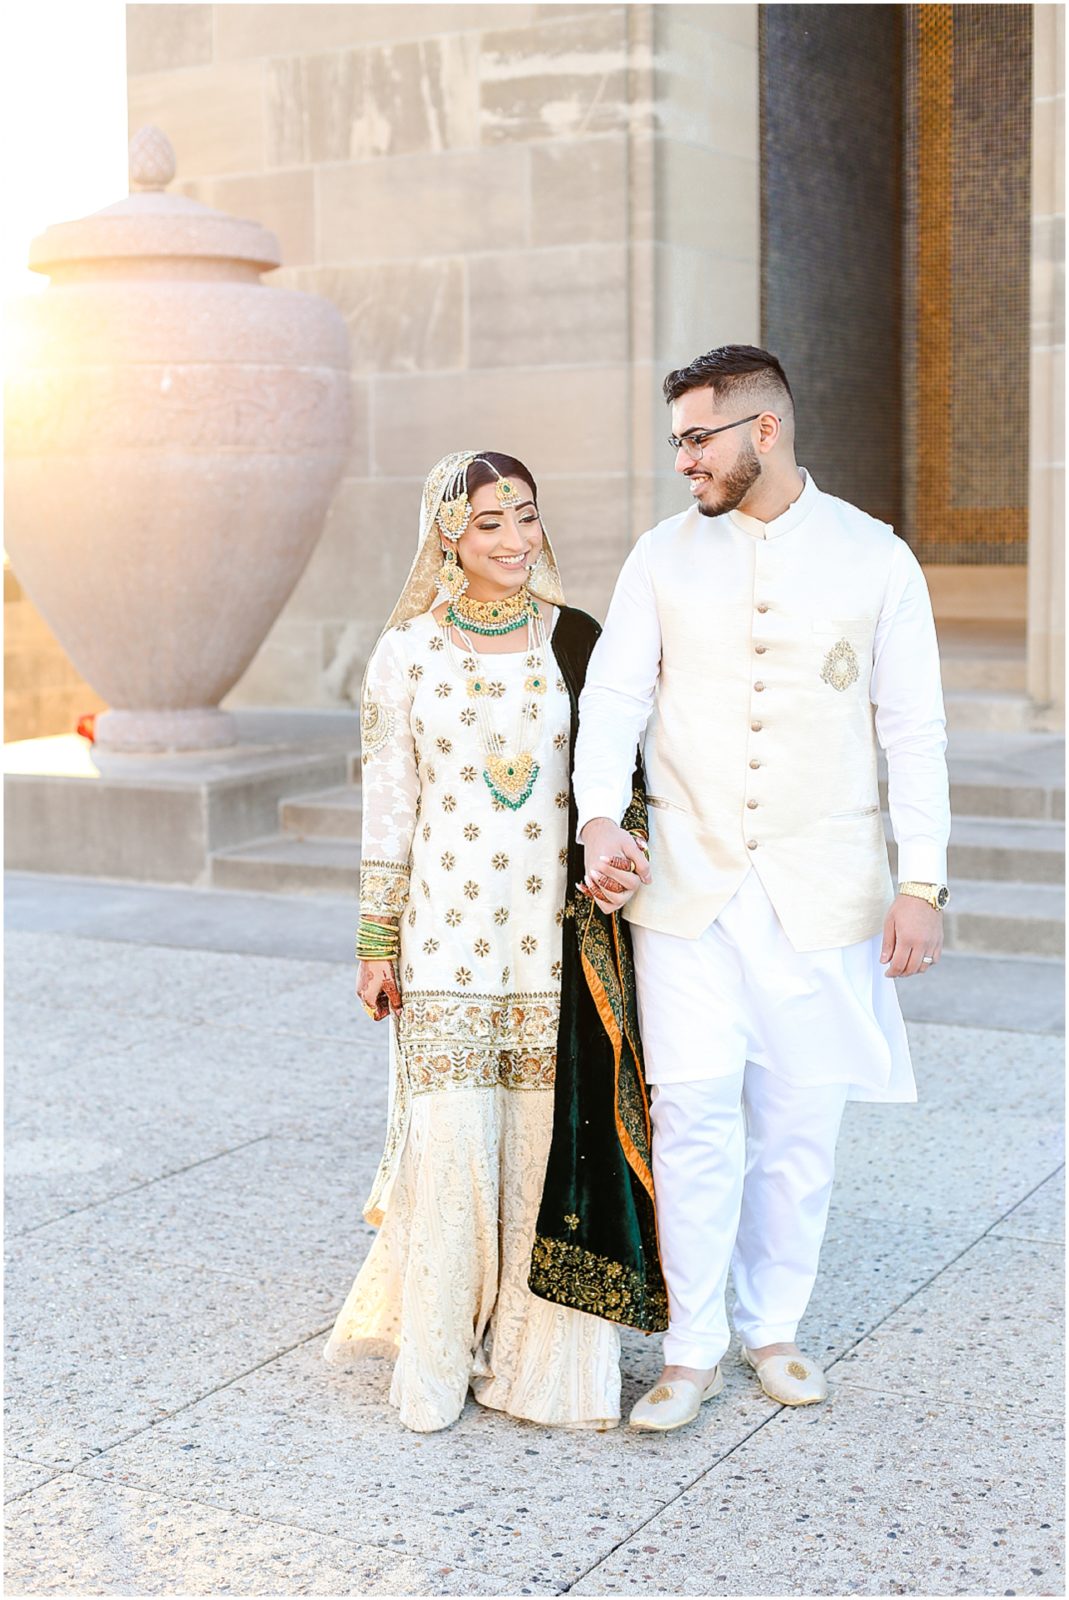 Pakistani Indian Nikkah Wedding Photos at Kansas City Liberty Memorial by Mariam Saifan Photography